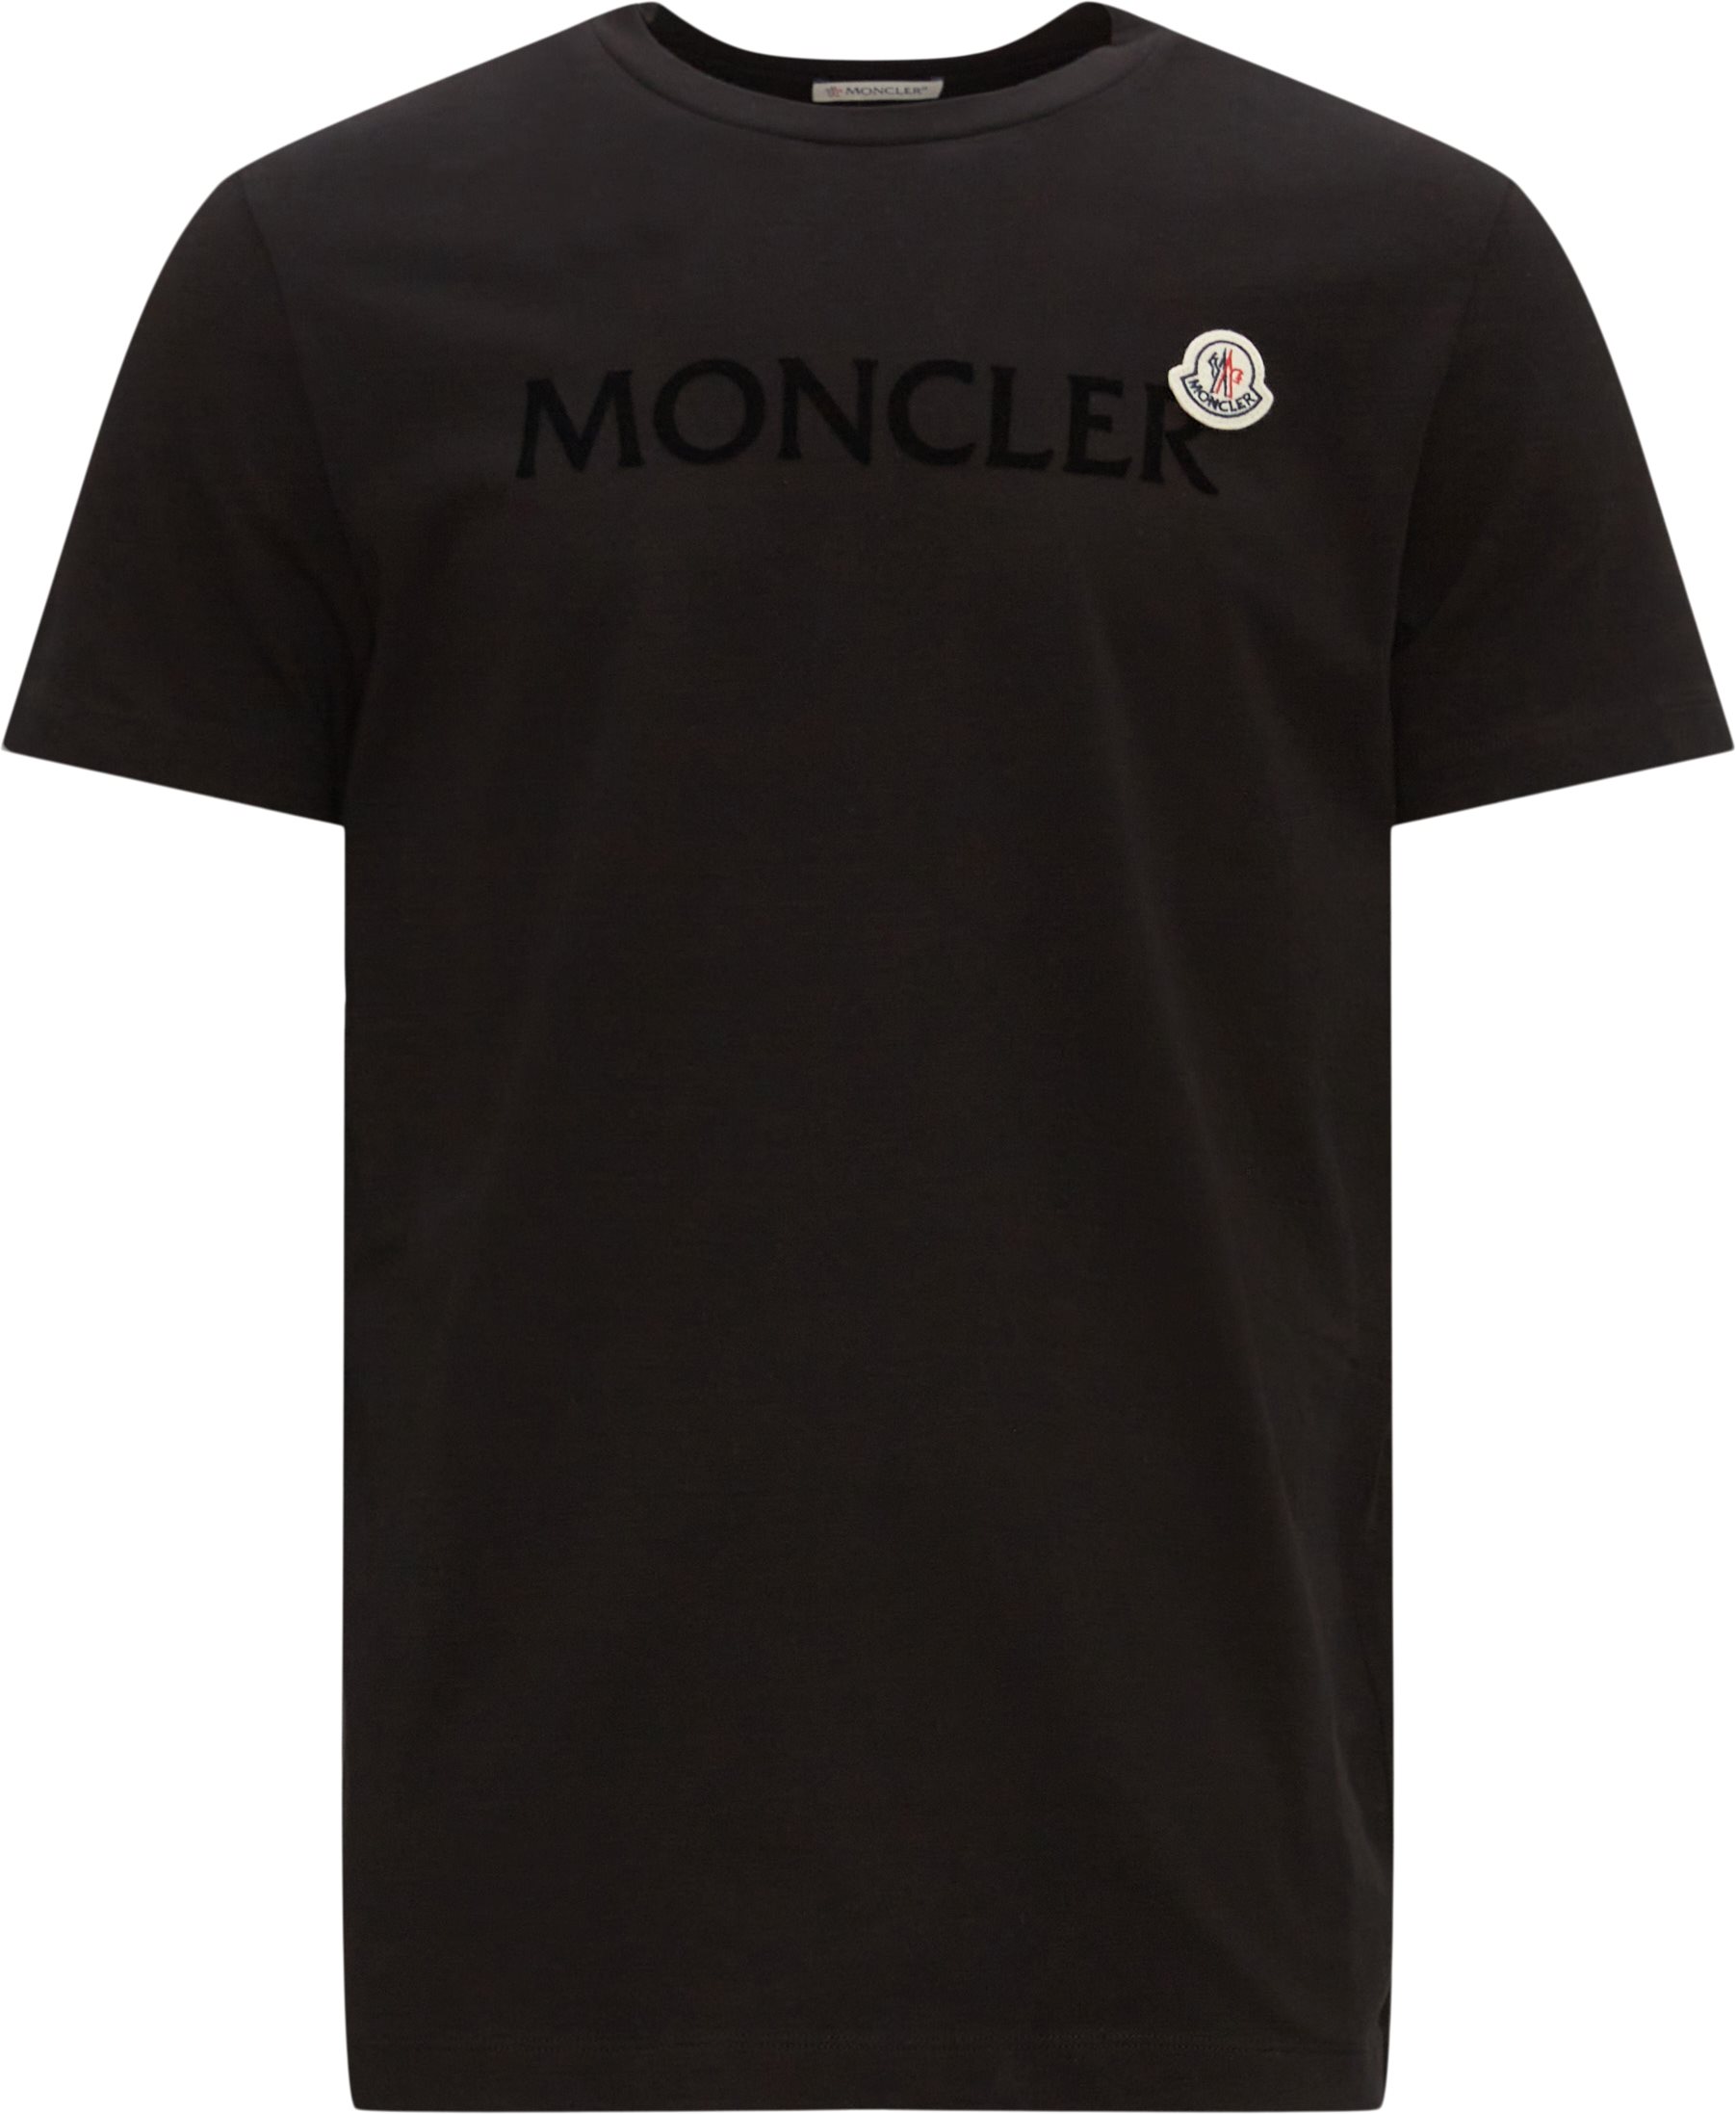 Moncler T-shirts 8C00064 8390T Sort